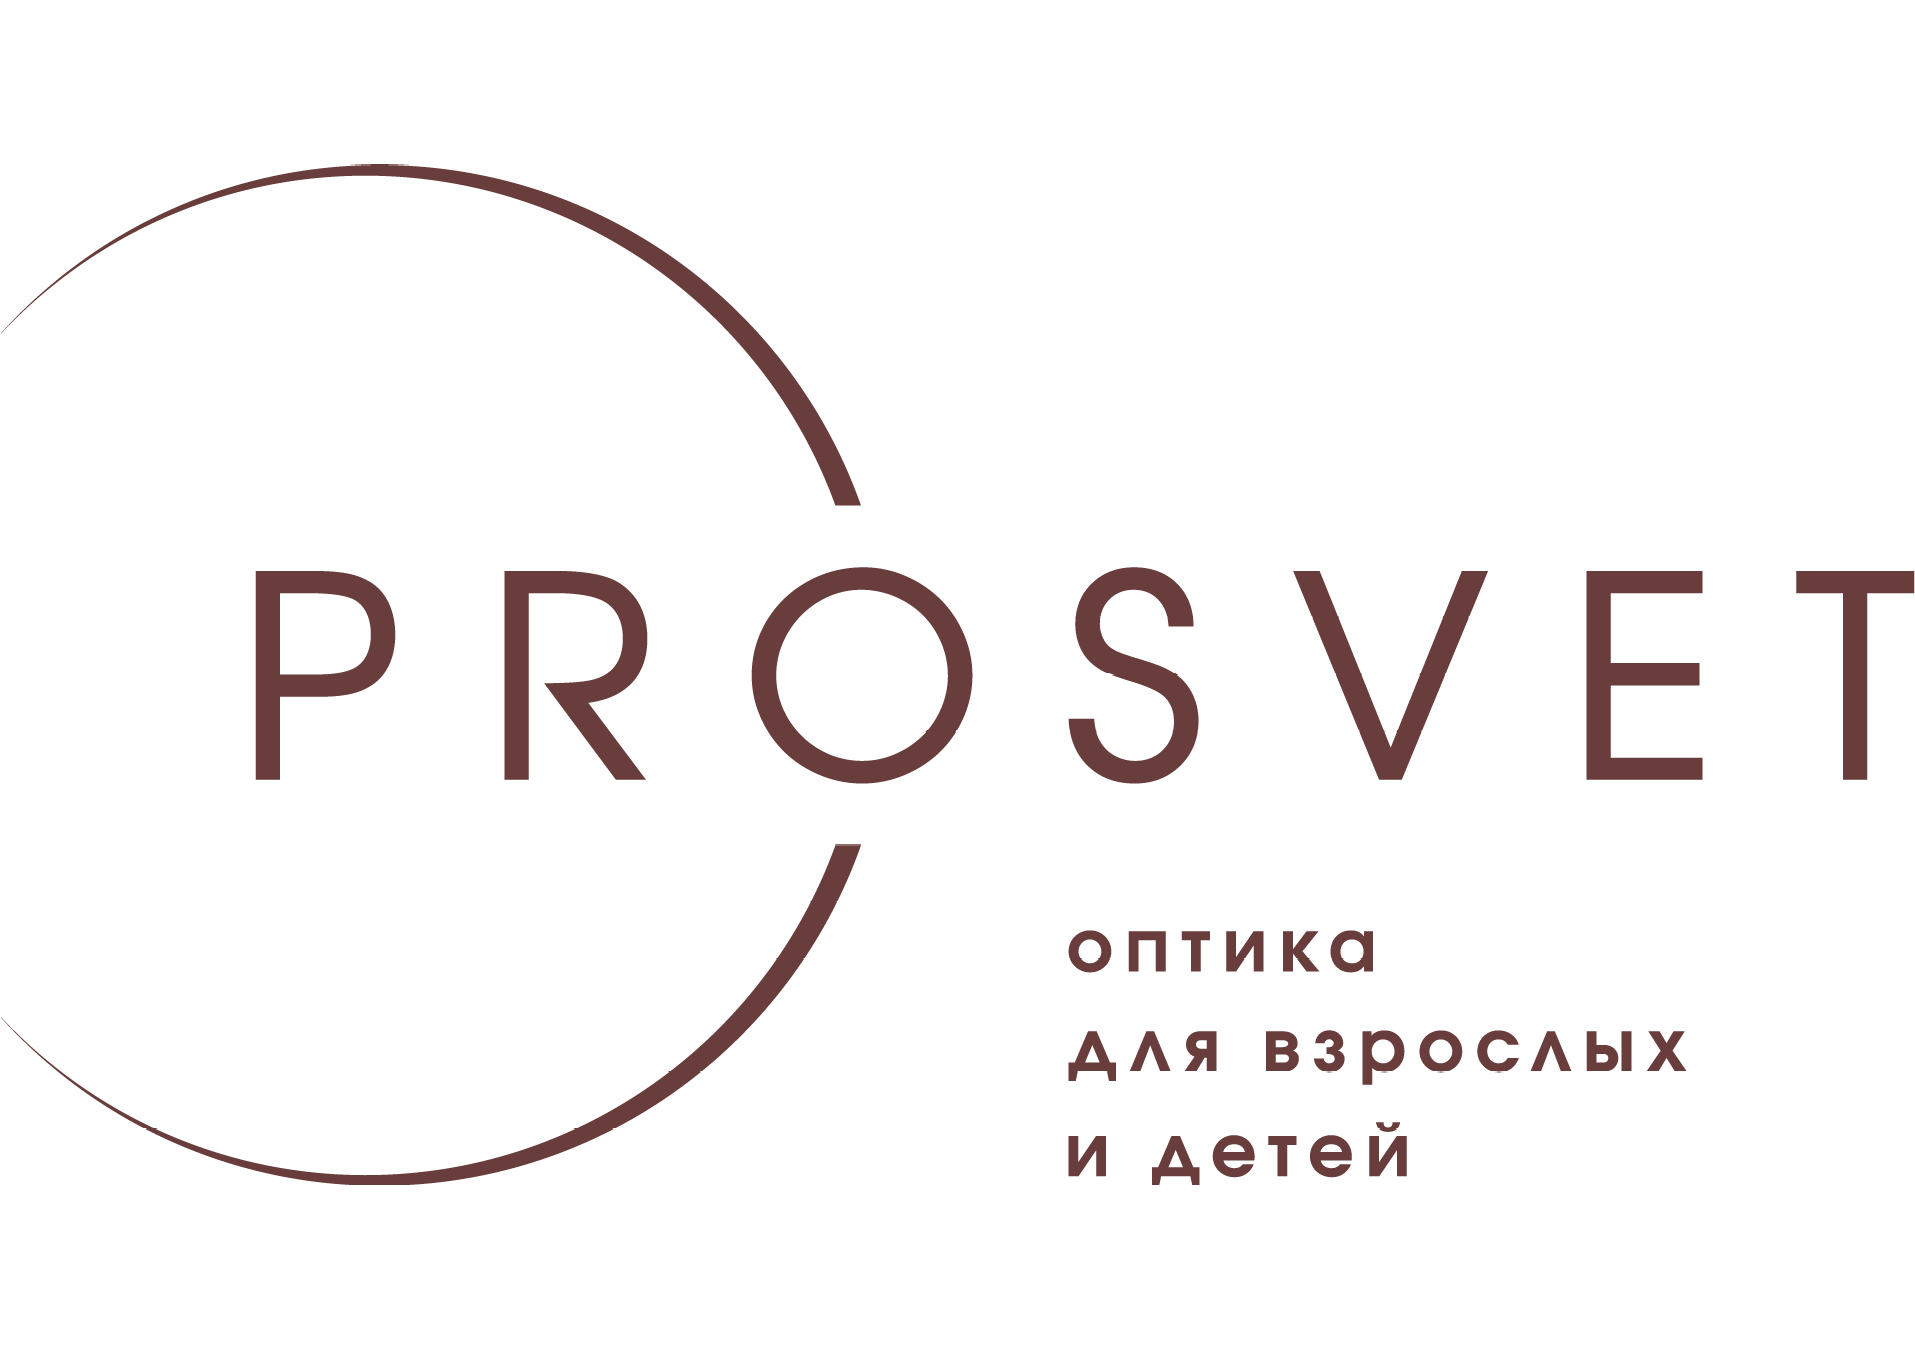 Сеть оптик "PROSVET" на Дзержинского